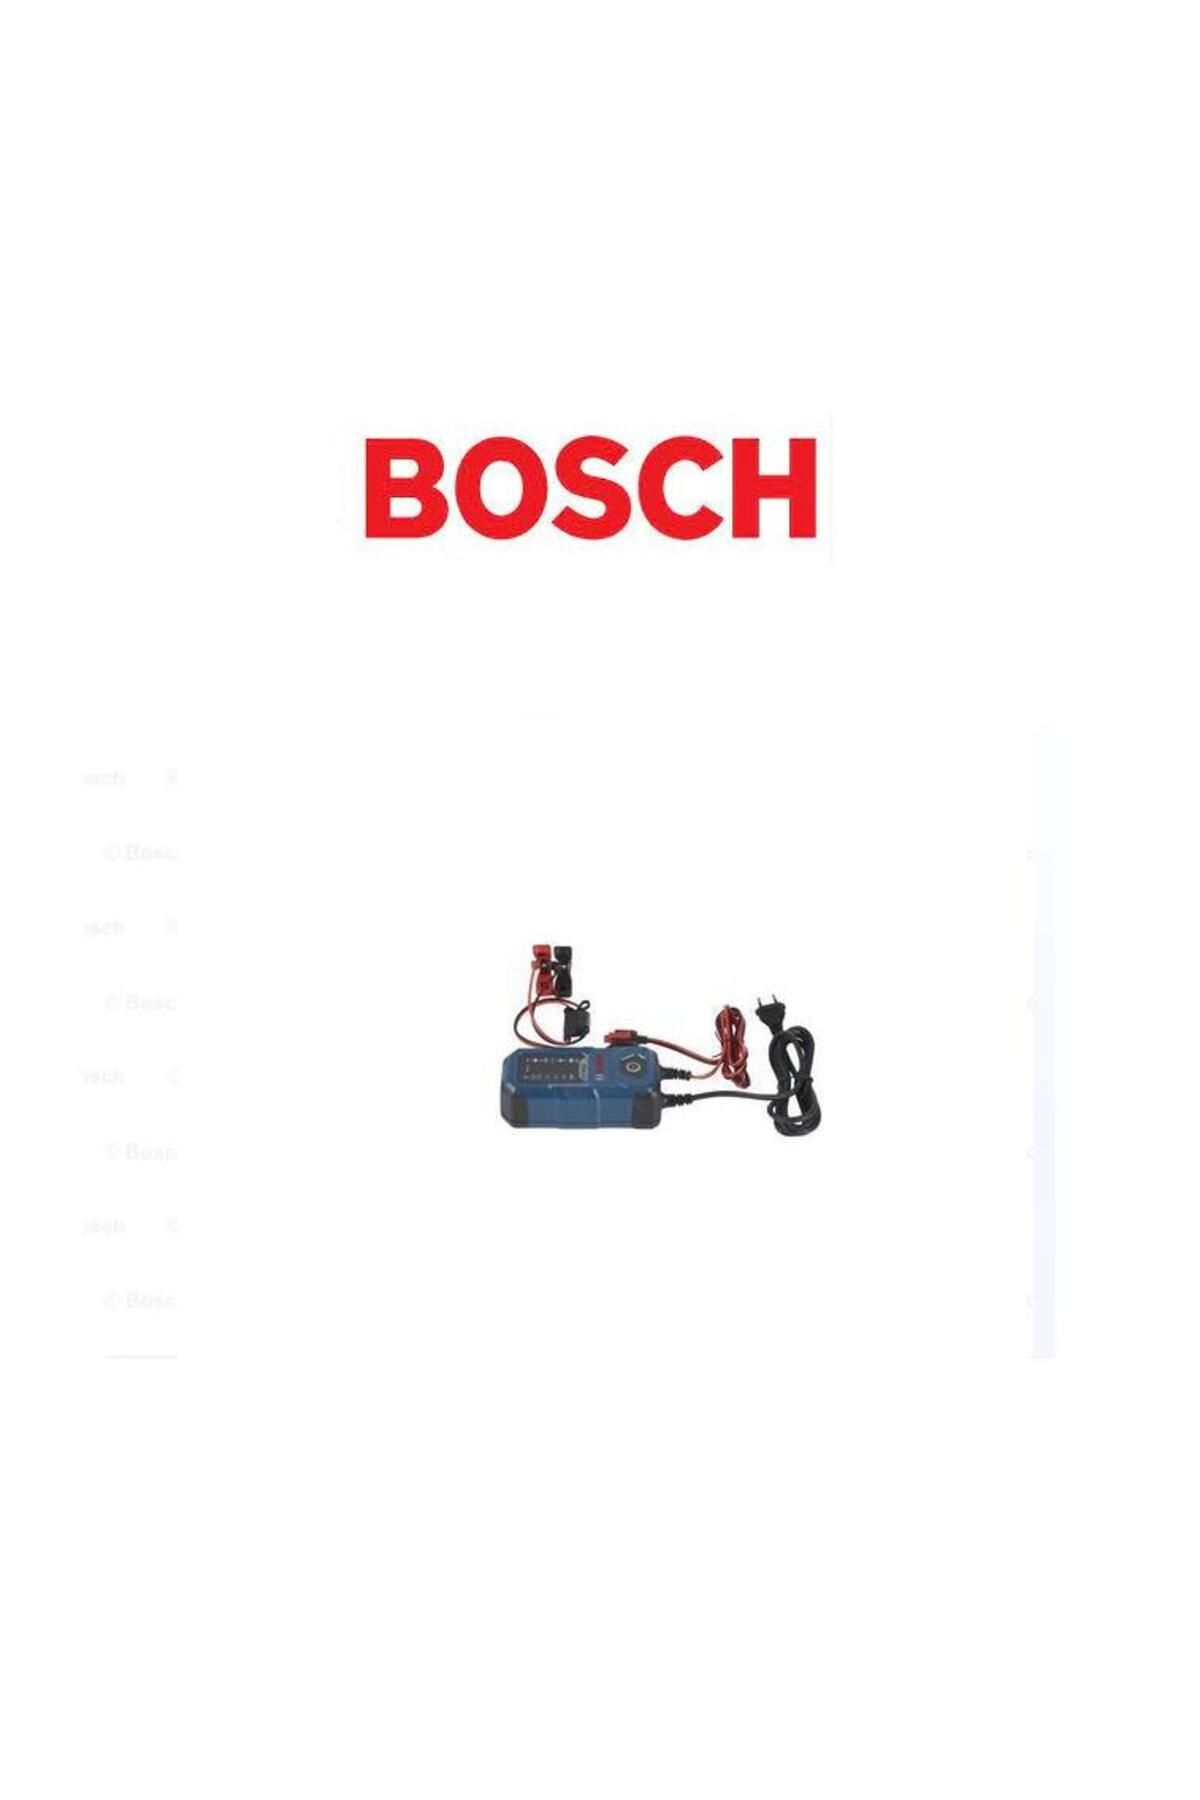 Bosch C40-Lİ AKÜ ŞARJ CİHAZI 6V / 12V 5A GİRİŞİ GERİLİMİ 14,7V 0189921040 BOSCH